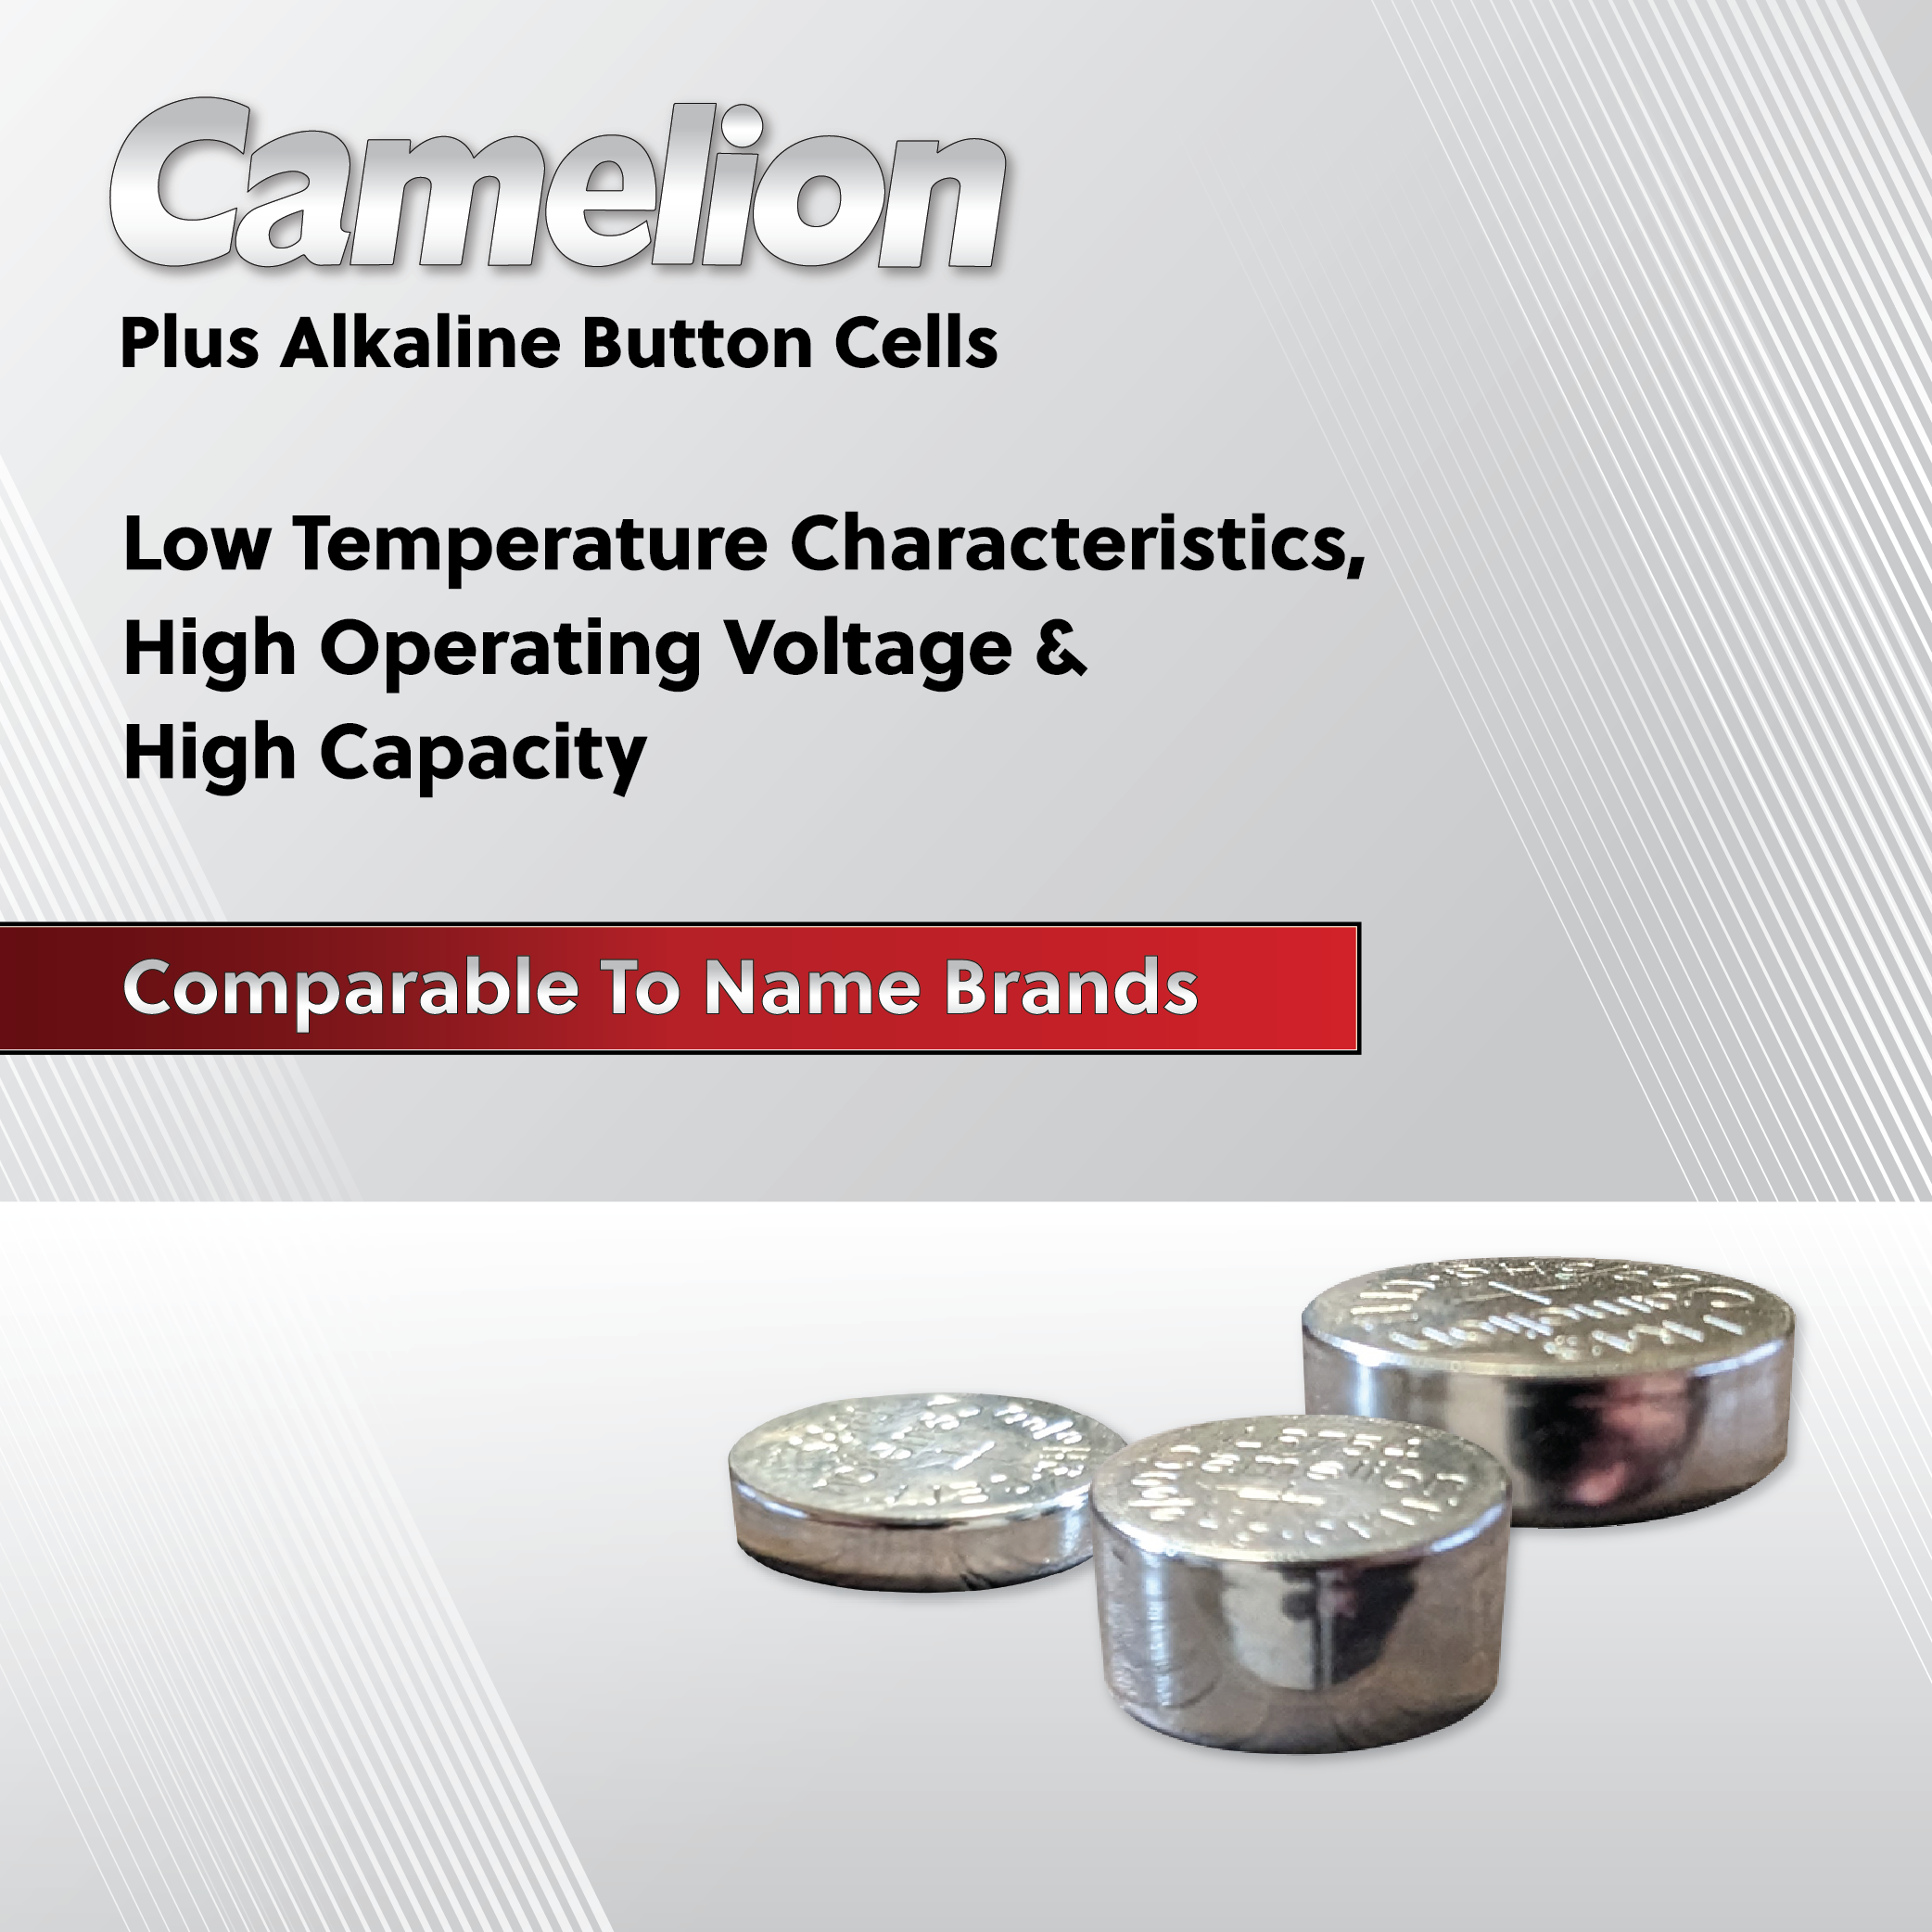 Camelion AG2 / 396 / LR726 1.5V Button Cell Battery